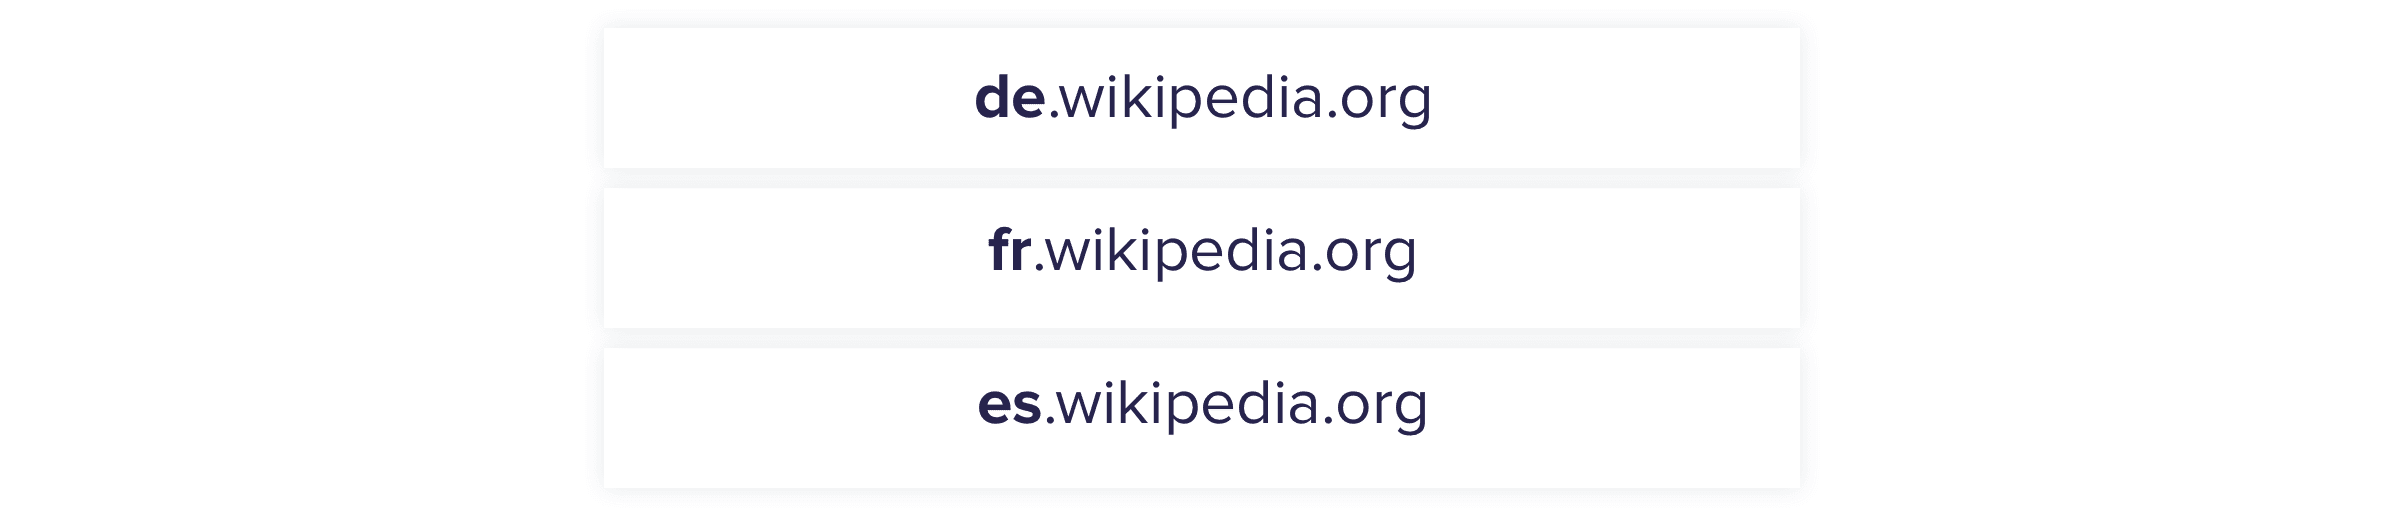 Wikipedia ká subdomains fun awọn agbegbe